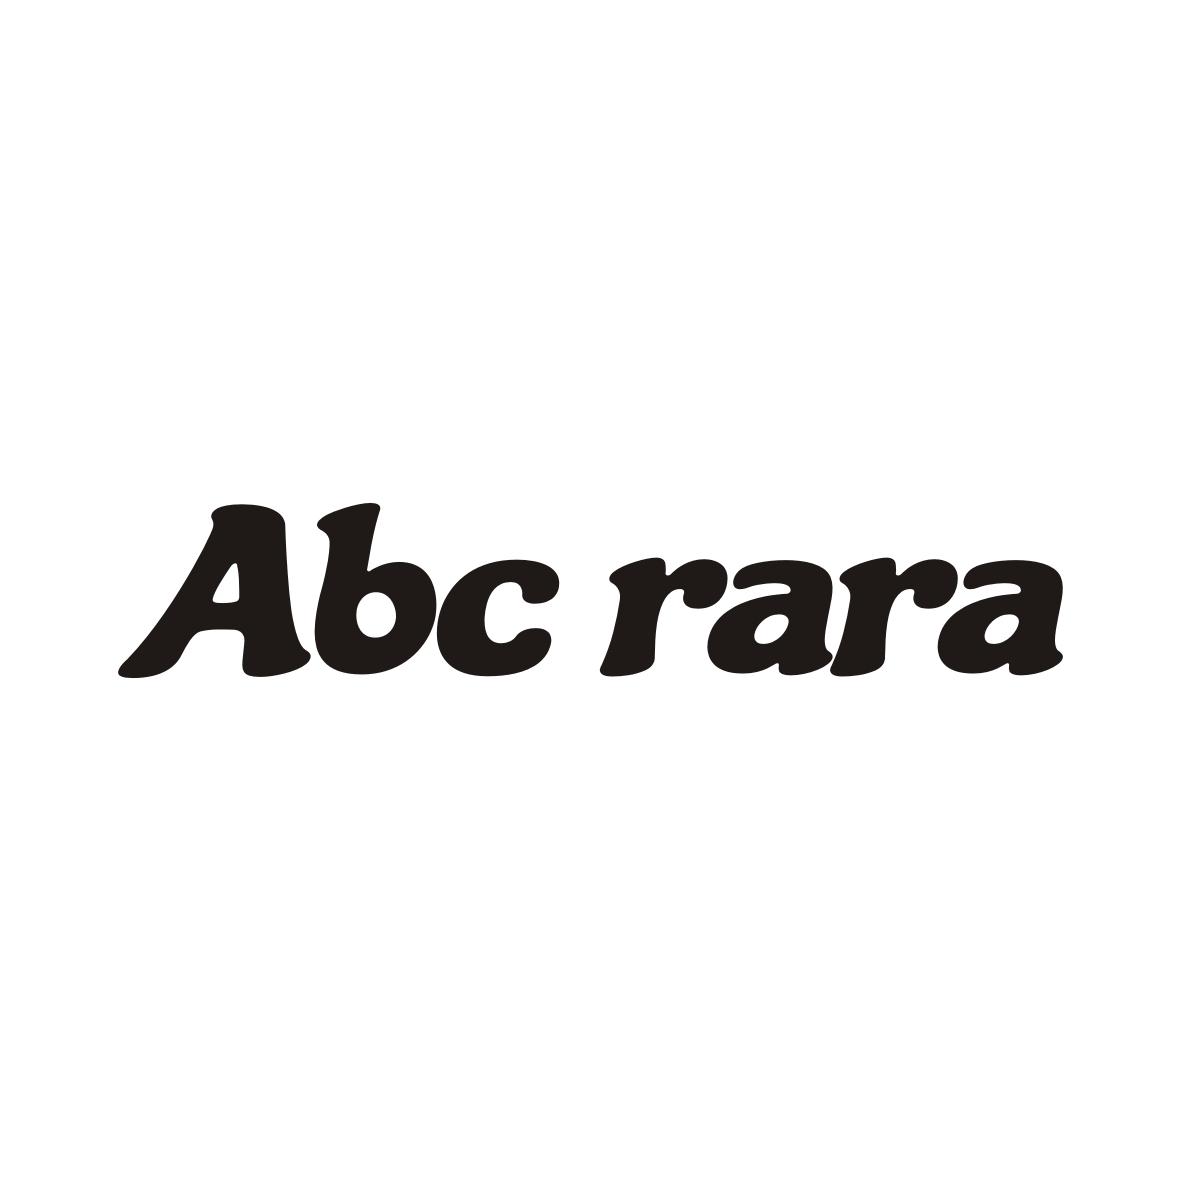 ABC RARA